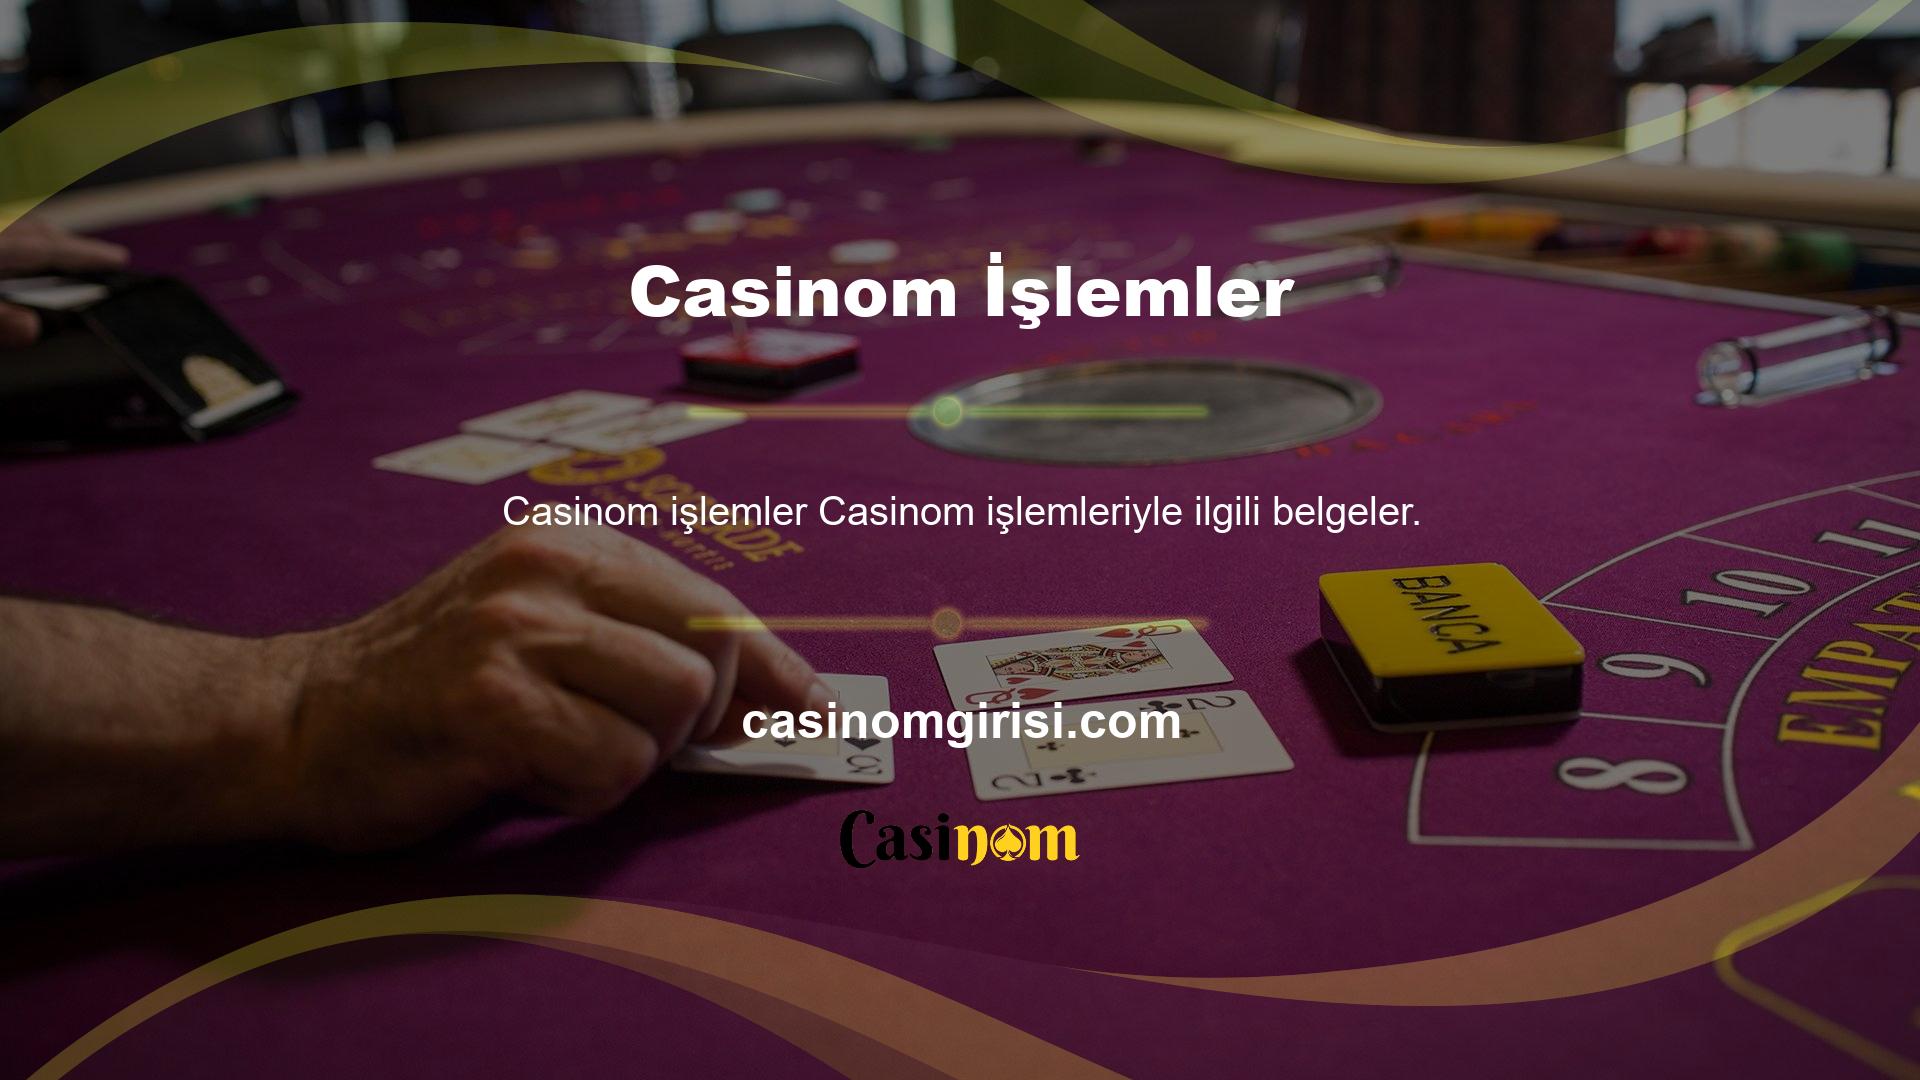 Casino sitelerinde birçok kişi üye olmak istediğini ifade etmiştir